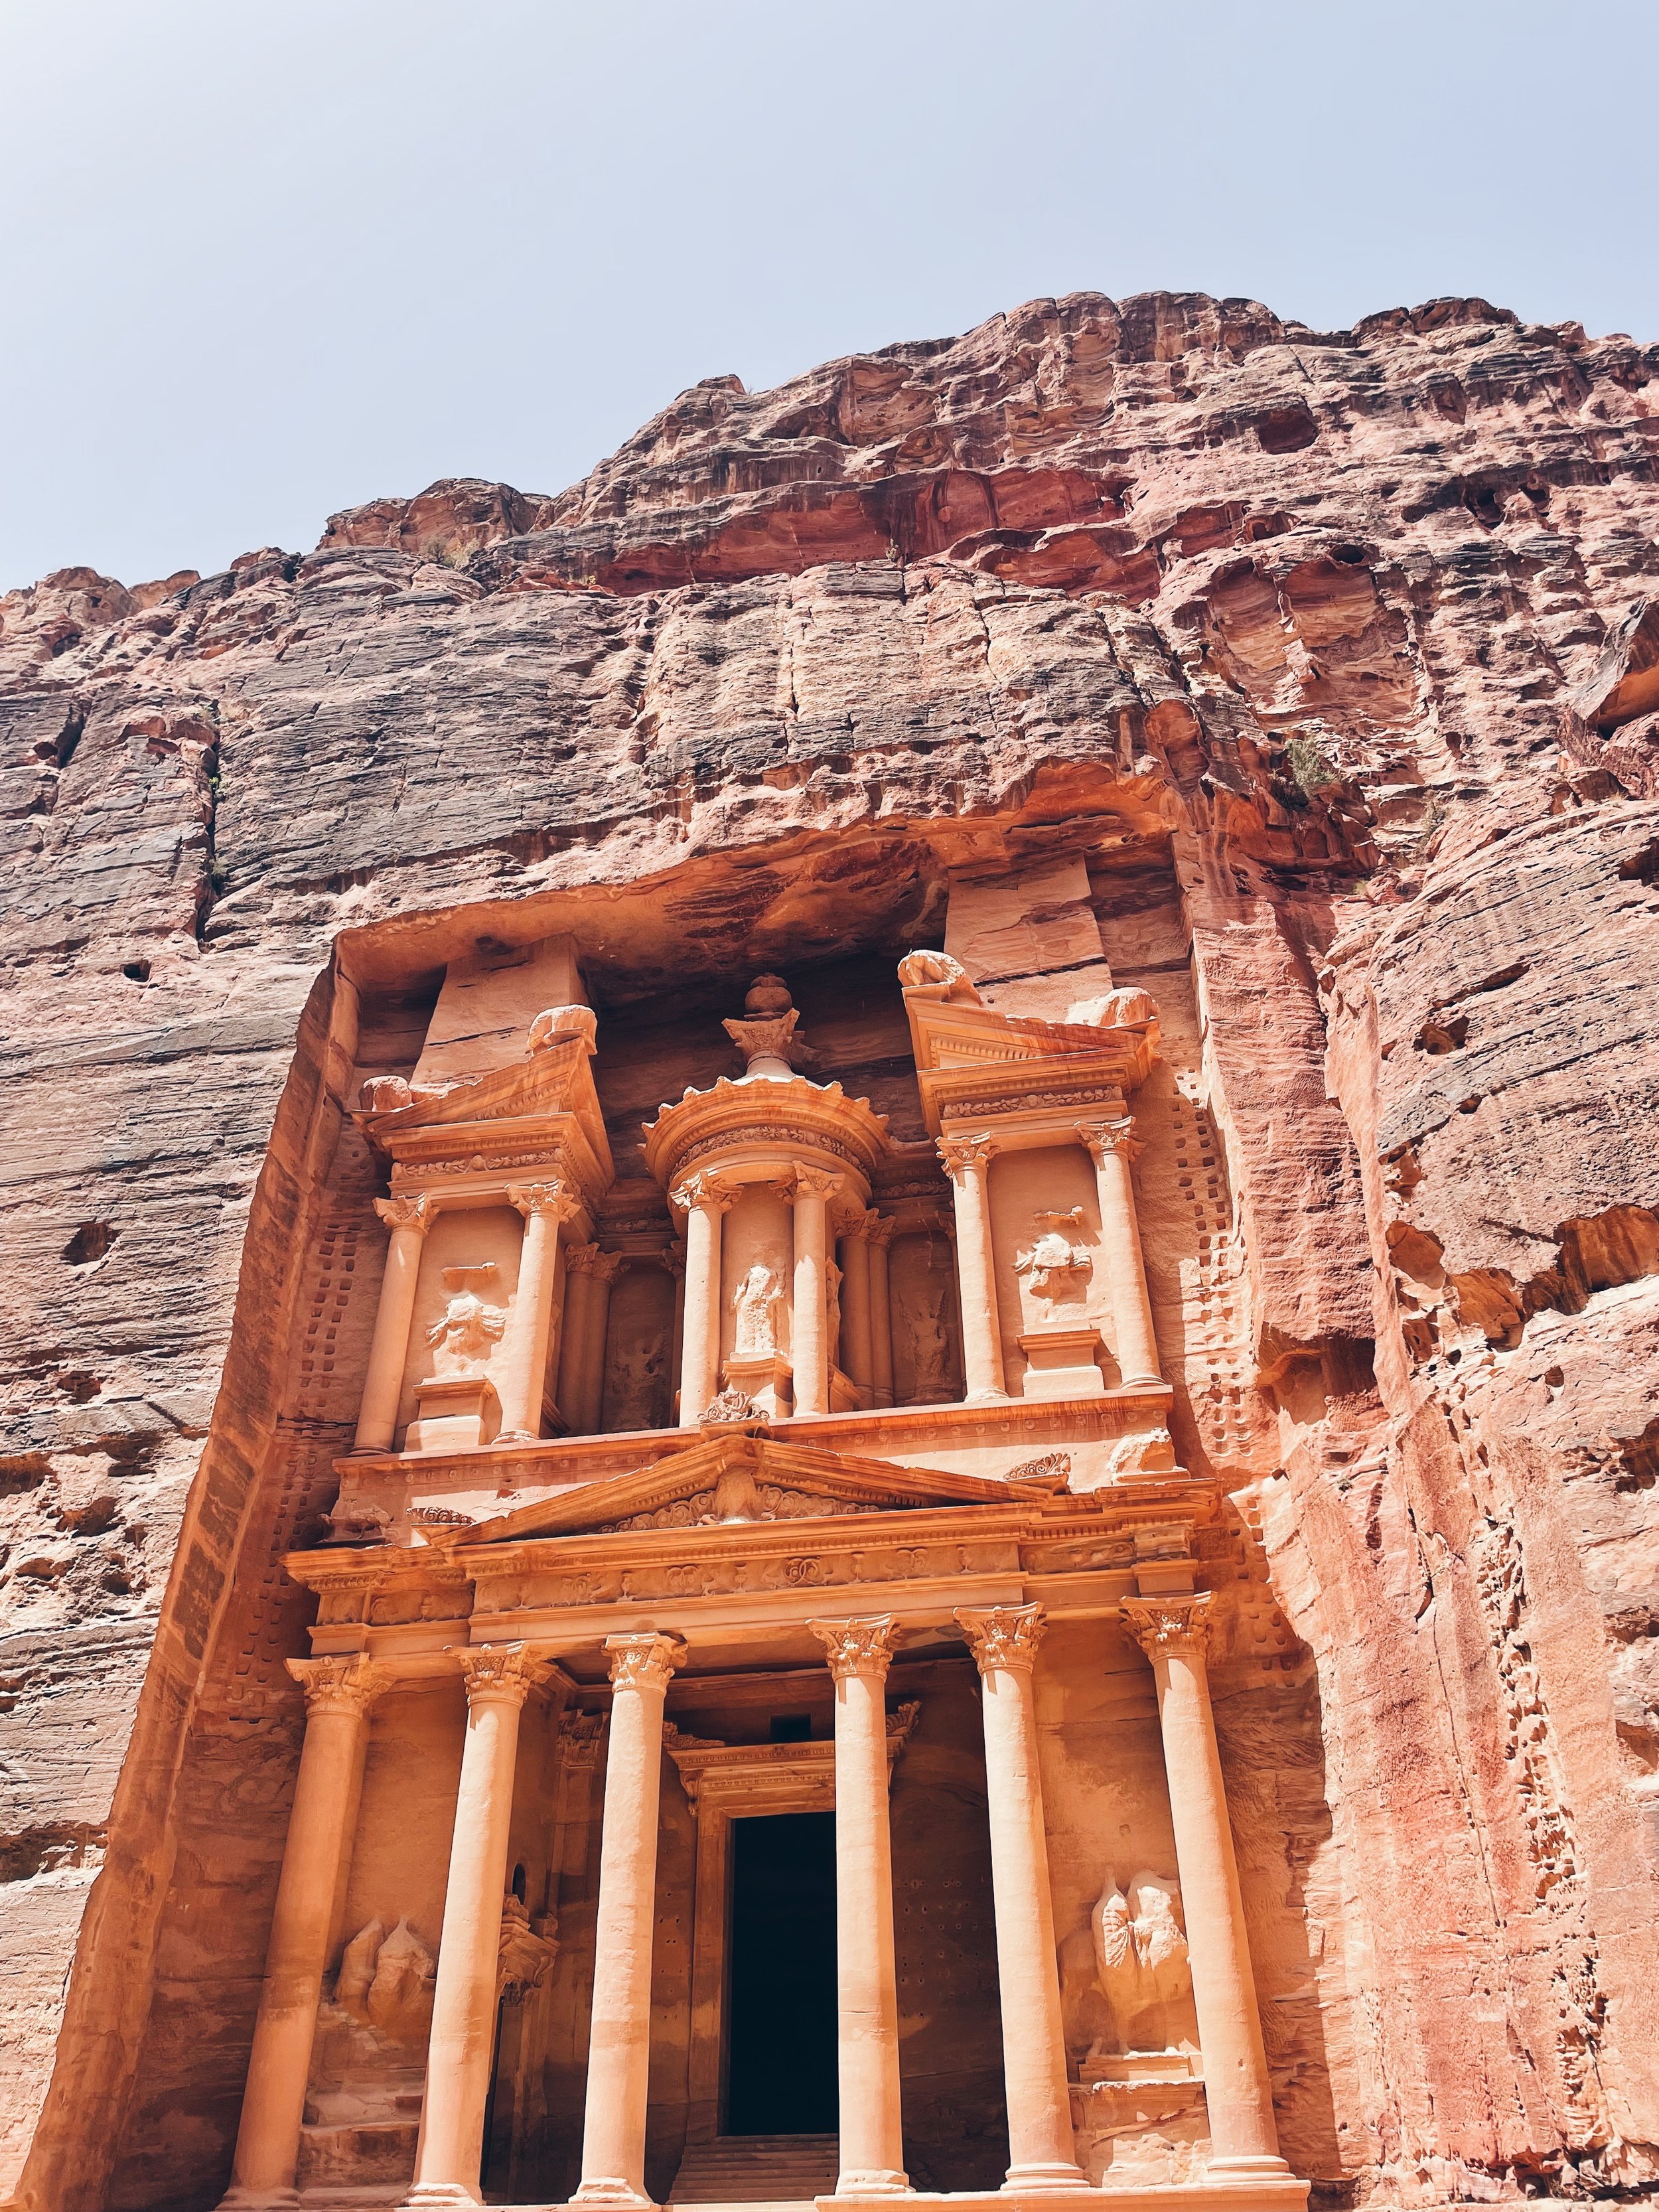 The Khaznah (Petra, Jordan)